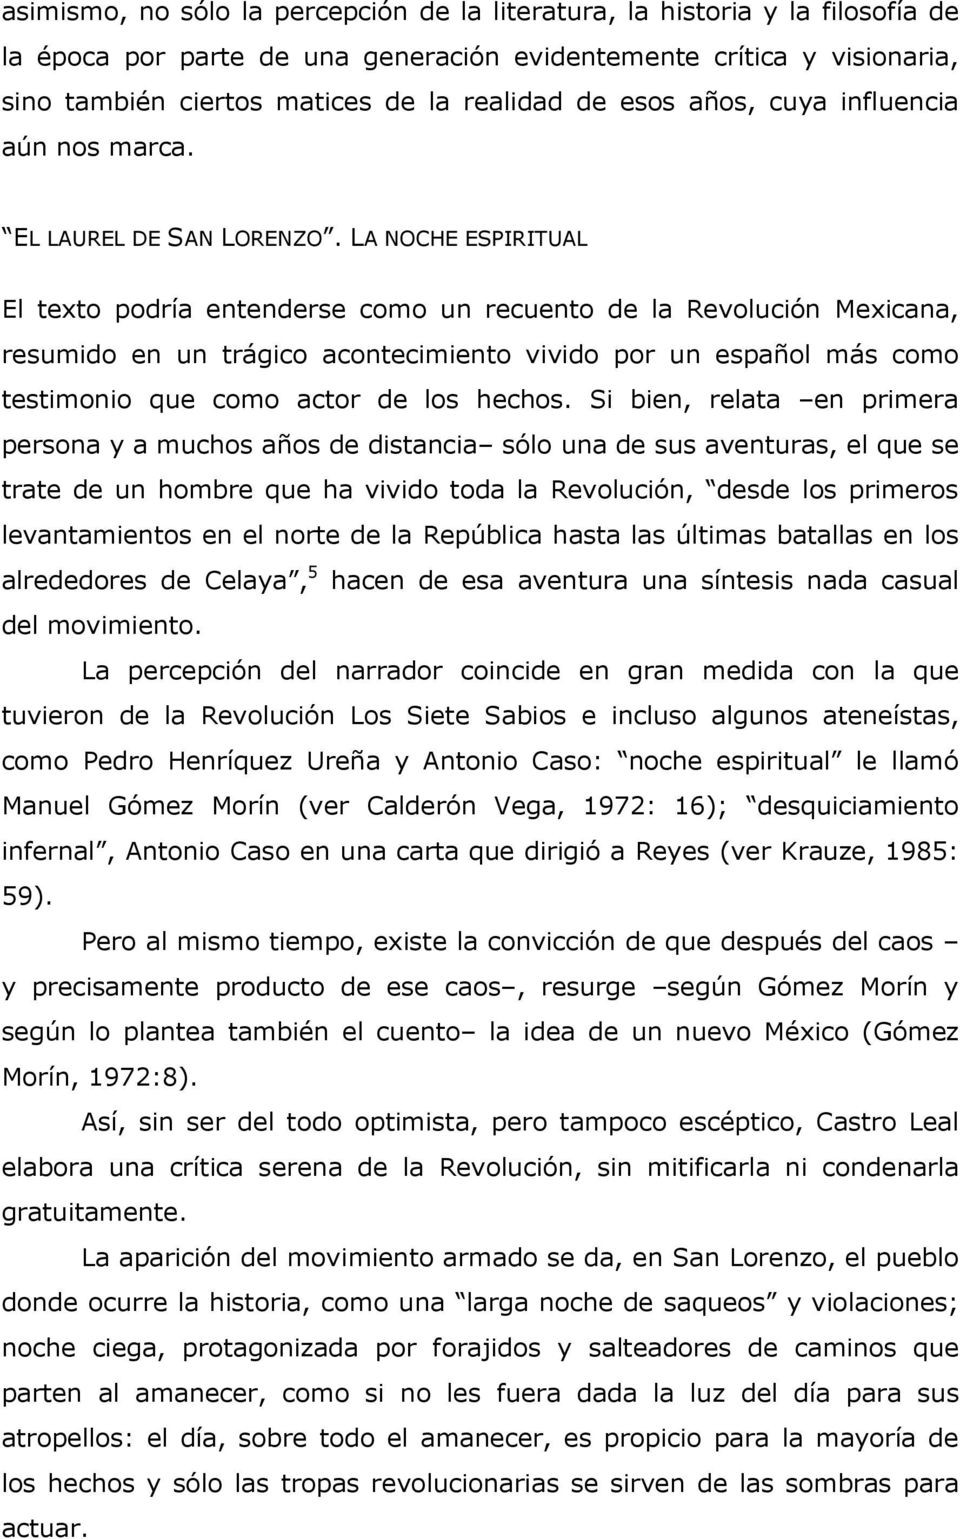 LA NOCHE ESPIRITUAL El texto podría entenderse como un recuento de la Revolución Mexicana, resumido en un trágico acontecimiento vivido por un español más como testimonio que como actor de los hechos.